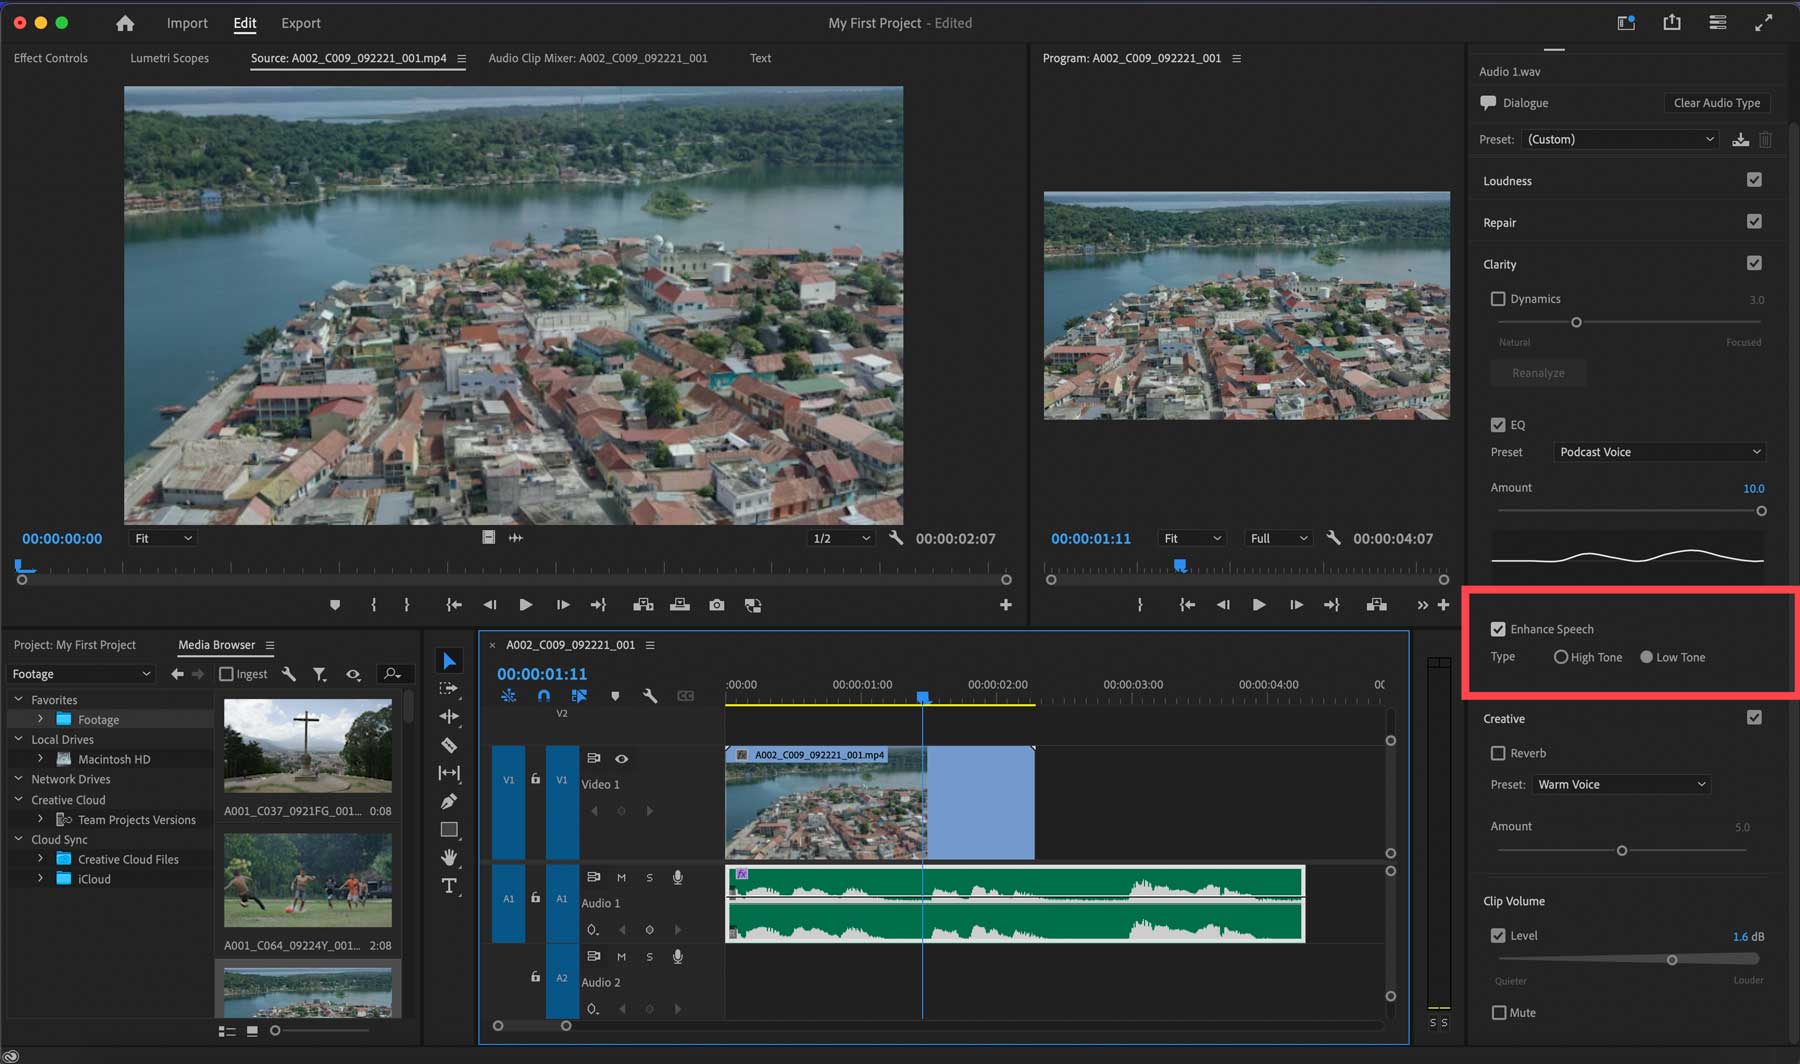 Adobe Premiere Pro Enhance Speech